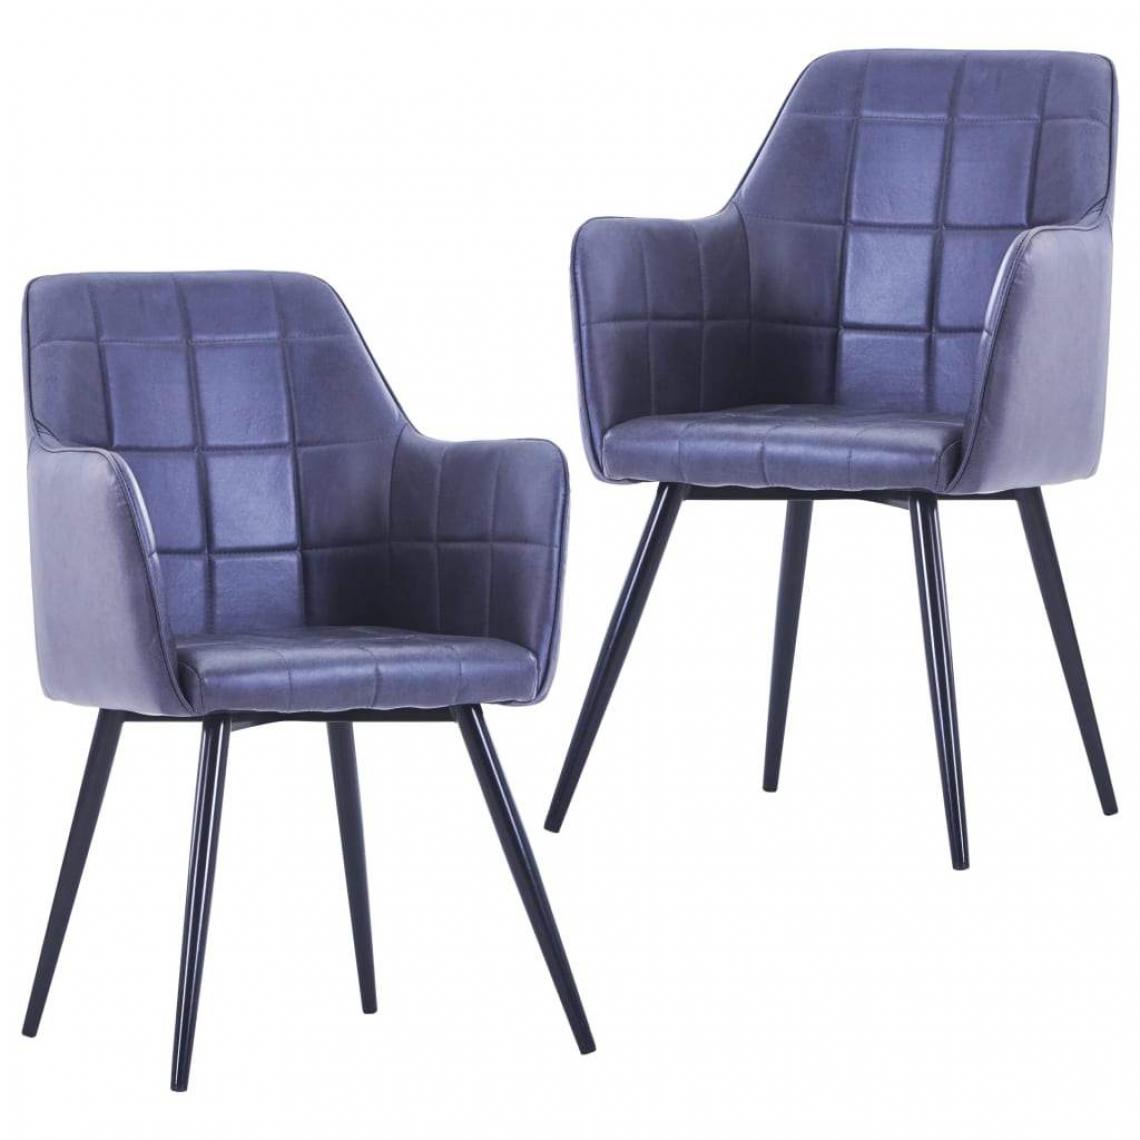 Decoshop26 - Lot de 2 chaises de salle à manger cuisine design moderne en similicuir daim gris CDS020602 - Chaises